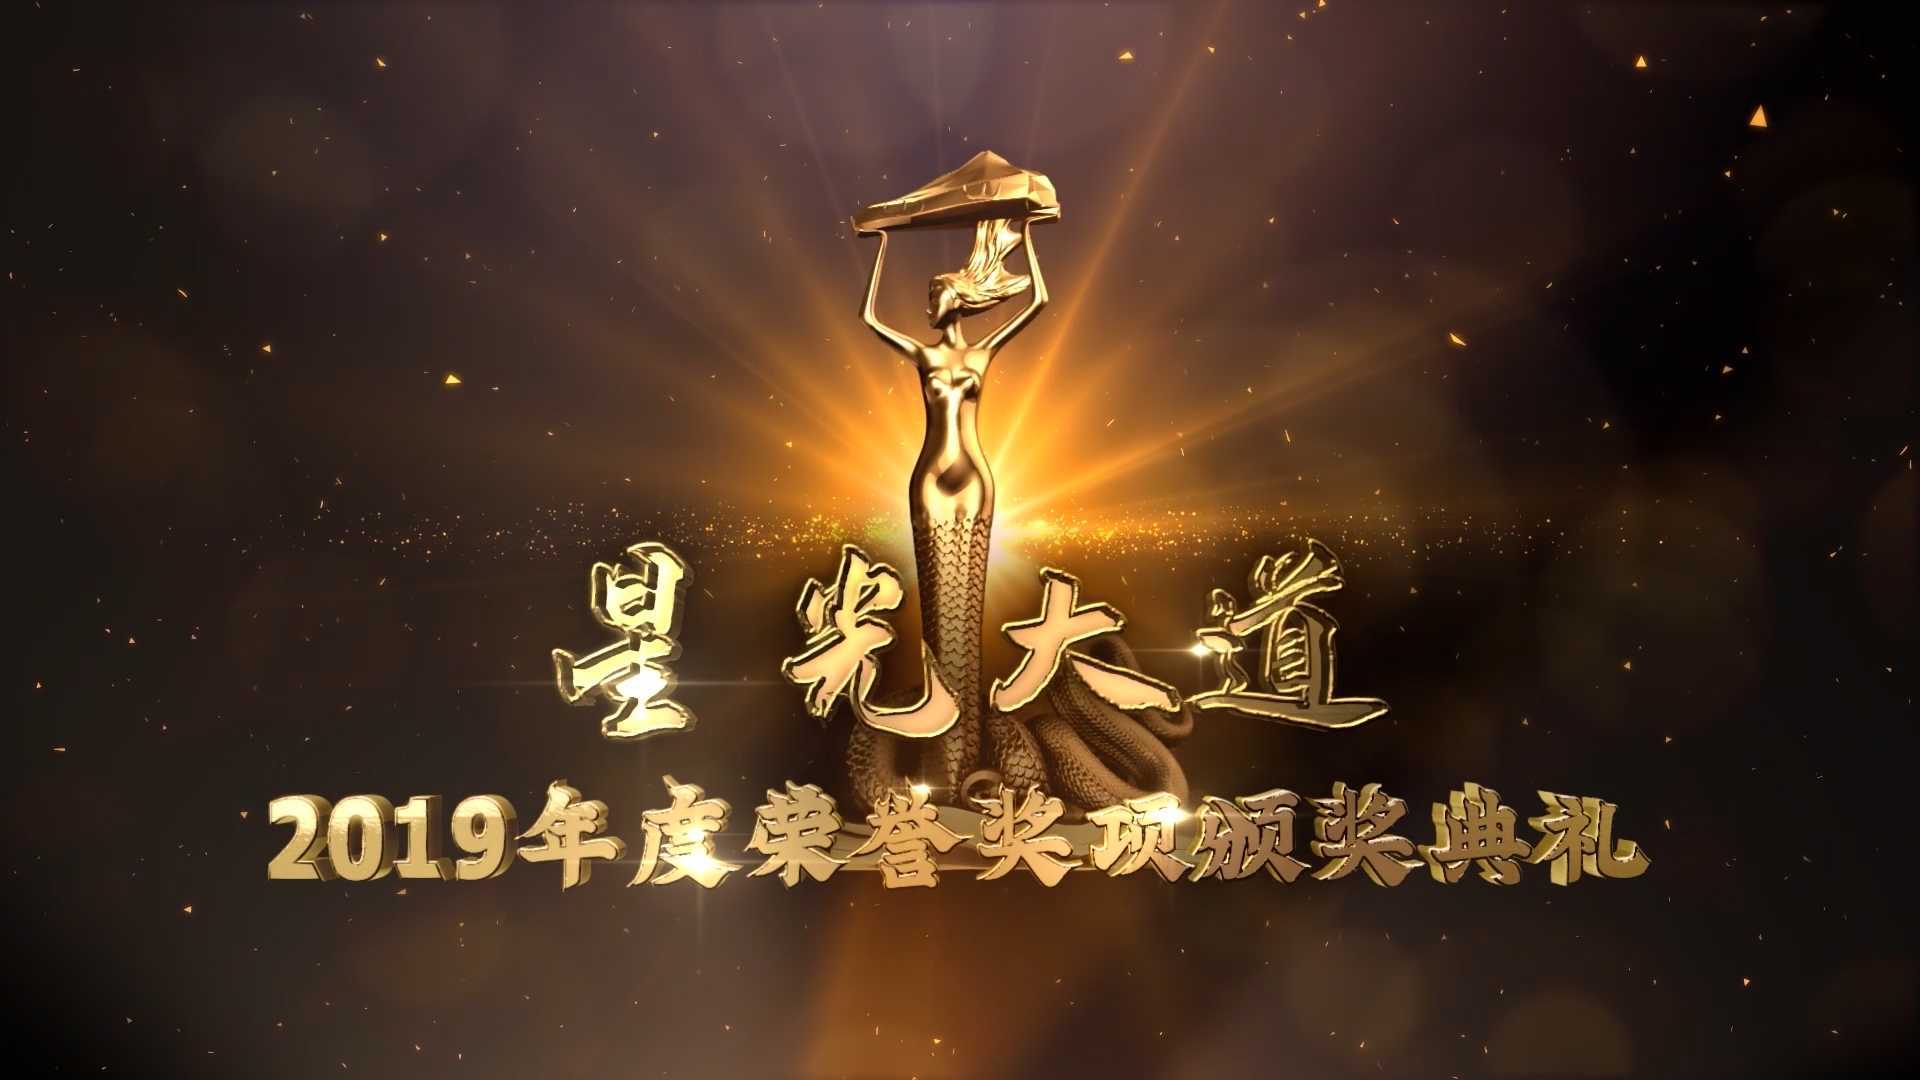 星光大道-2019年度颁奖典礼